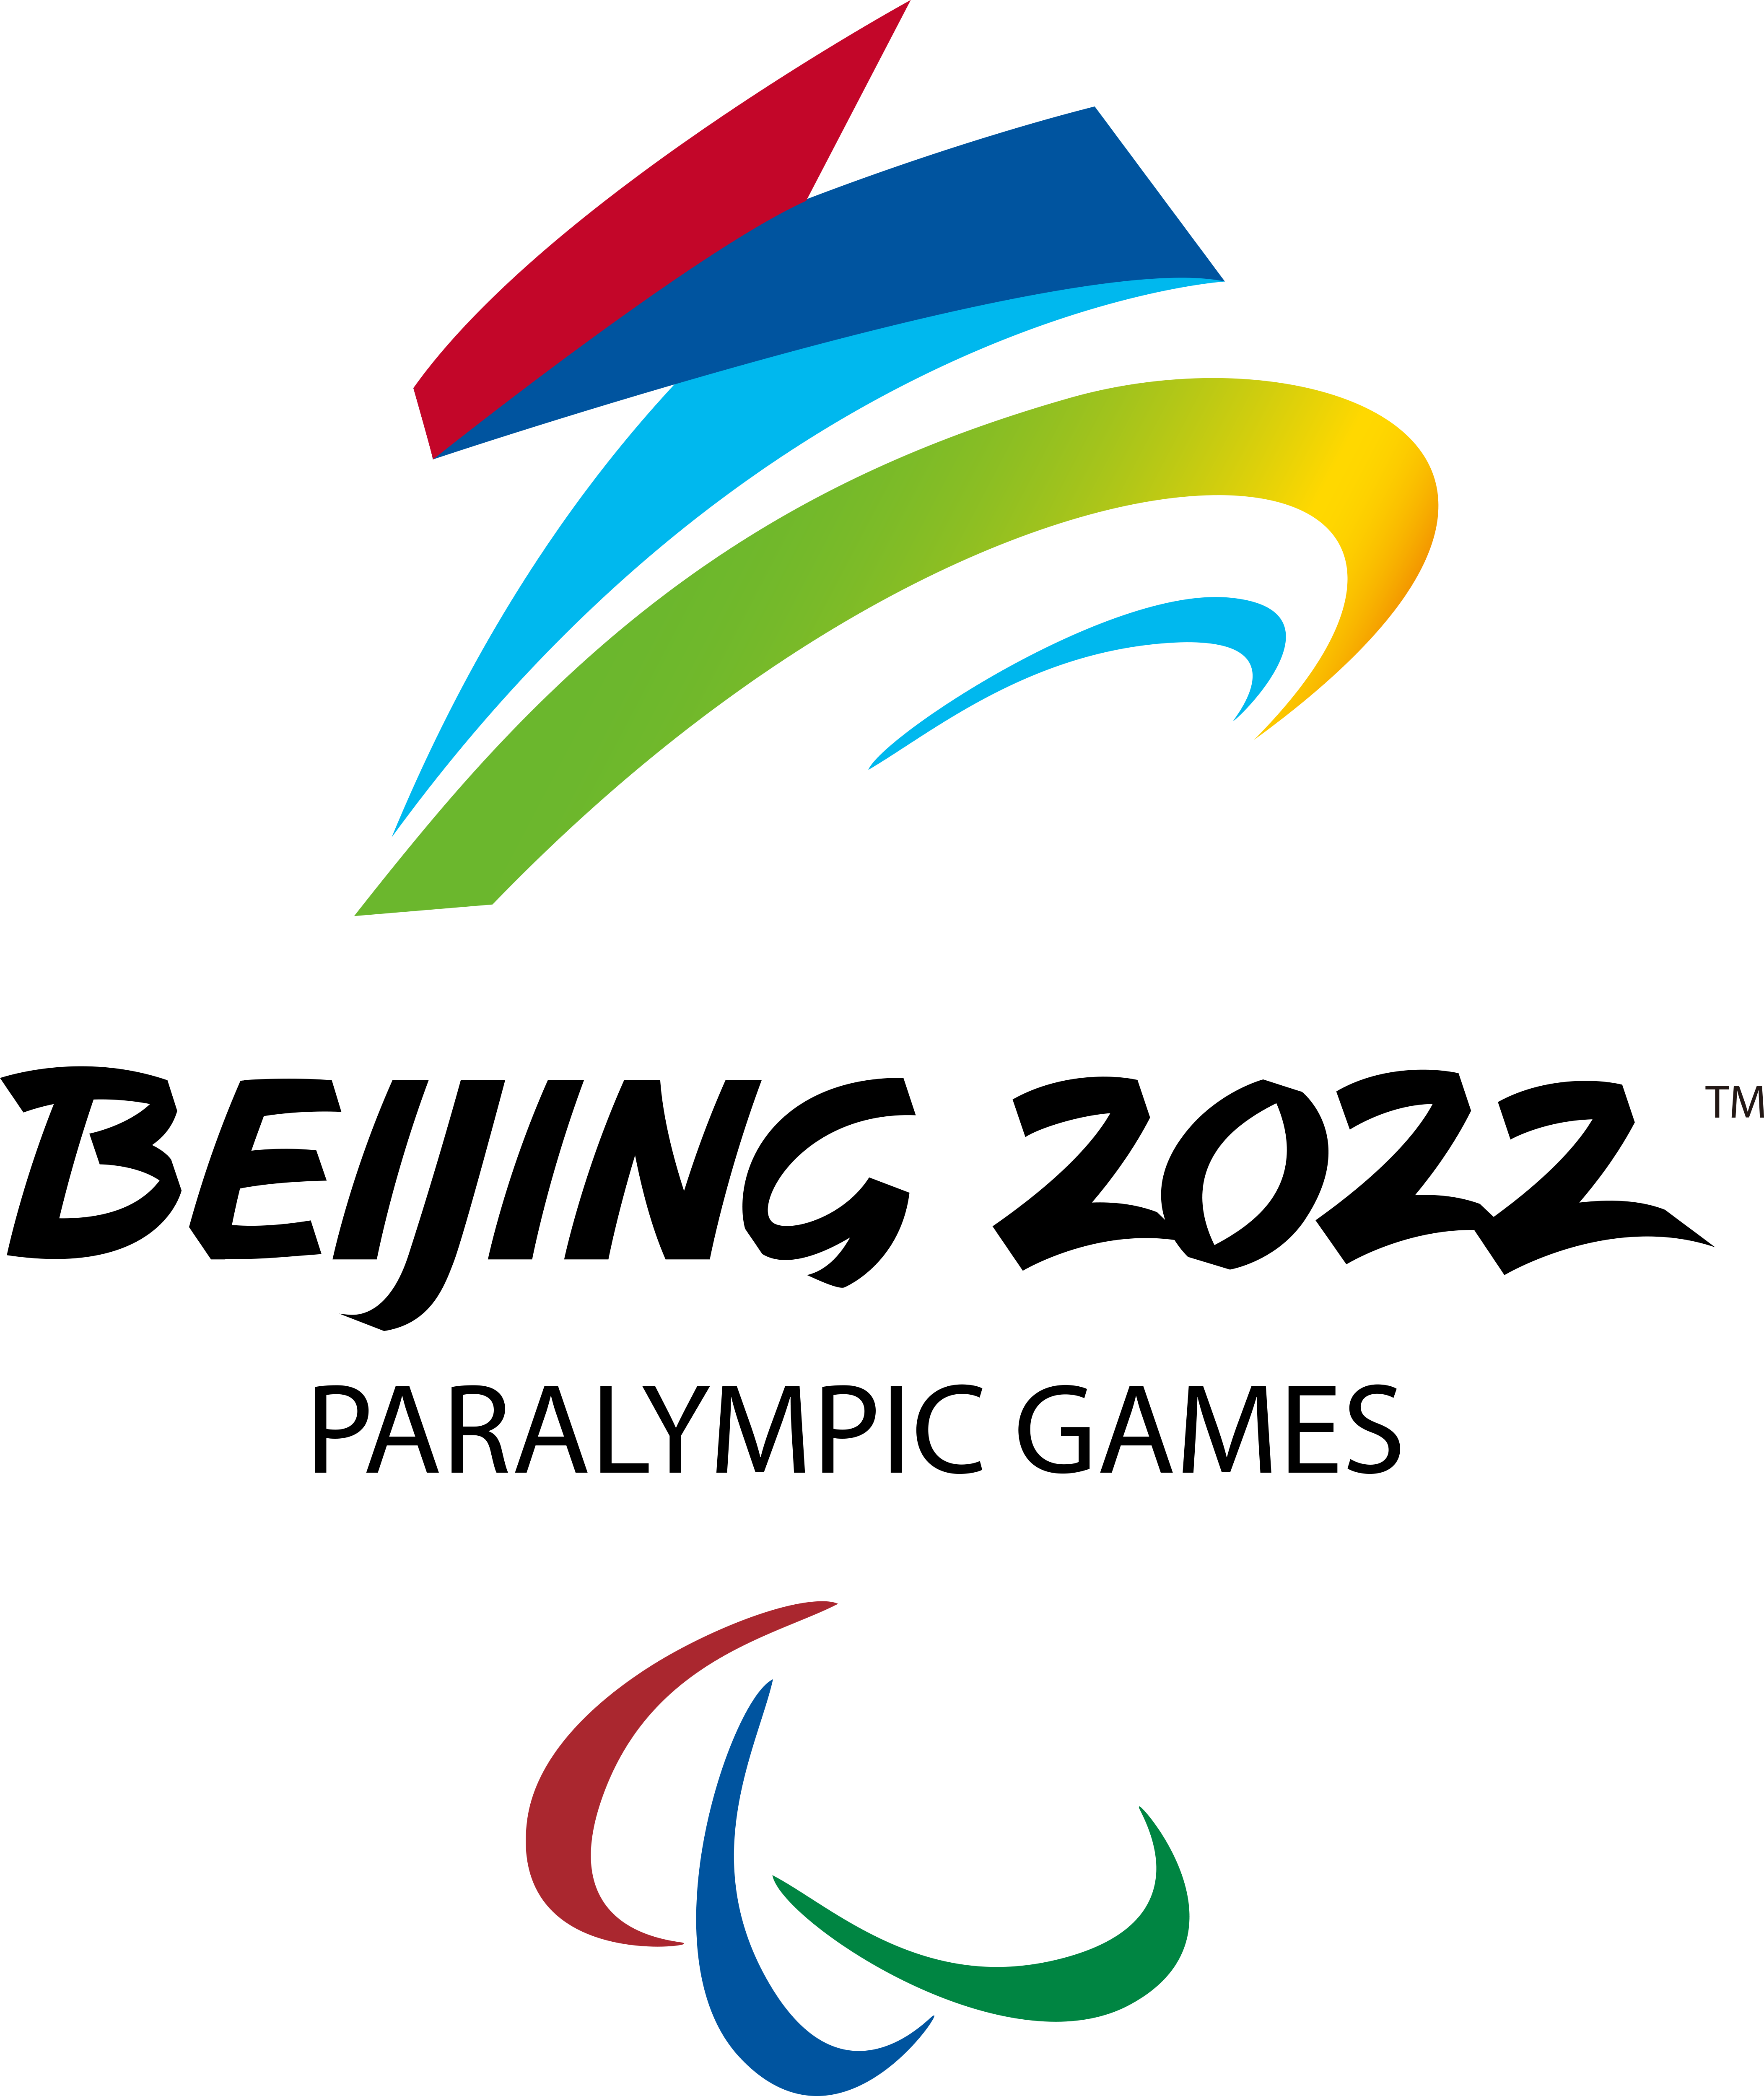 2022年北京冬季殘疾人奧林匹克運動會(2022年北京-張家口冬季殘疾人奧林匹克運動會)